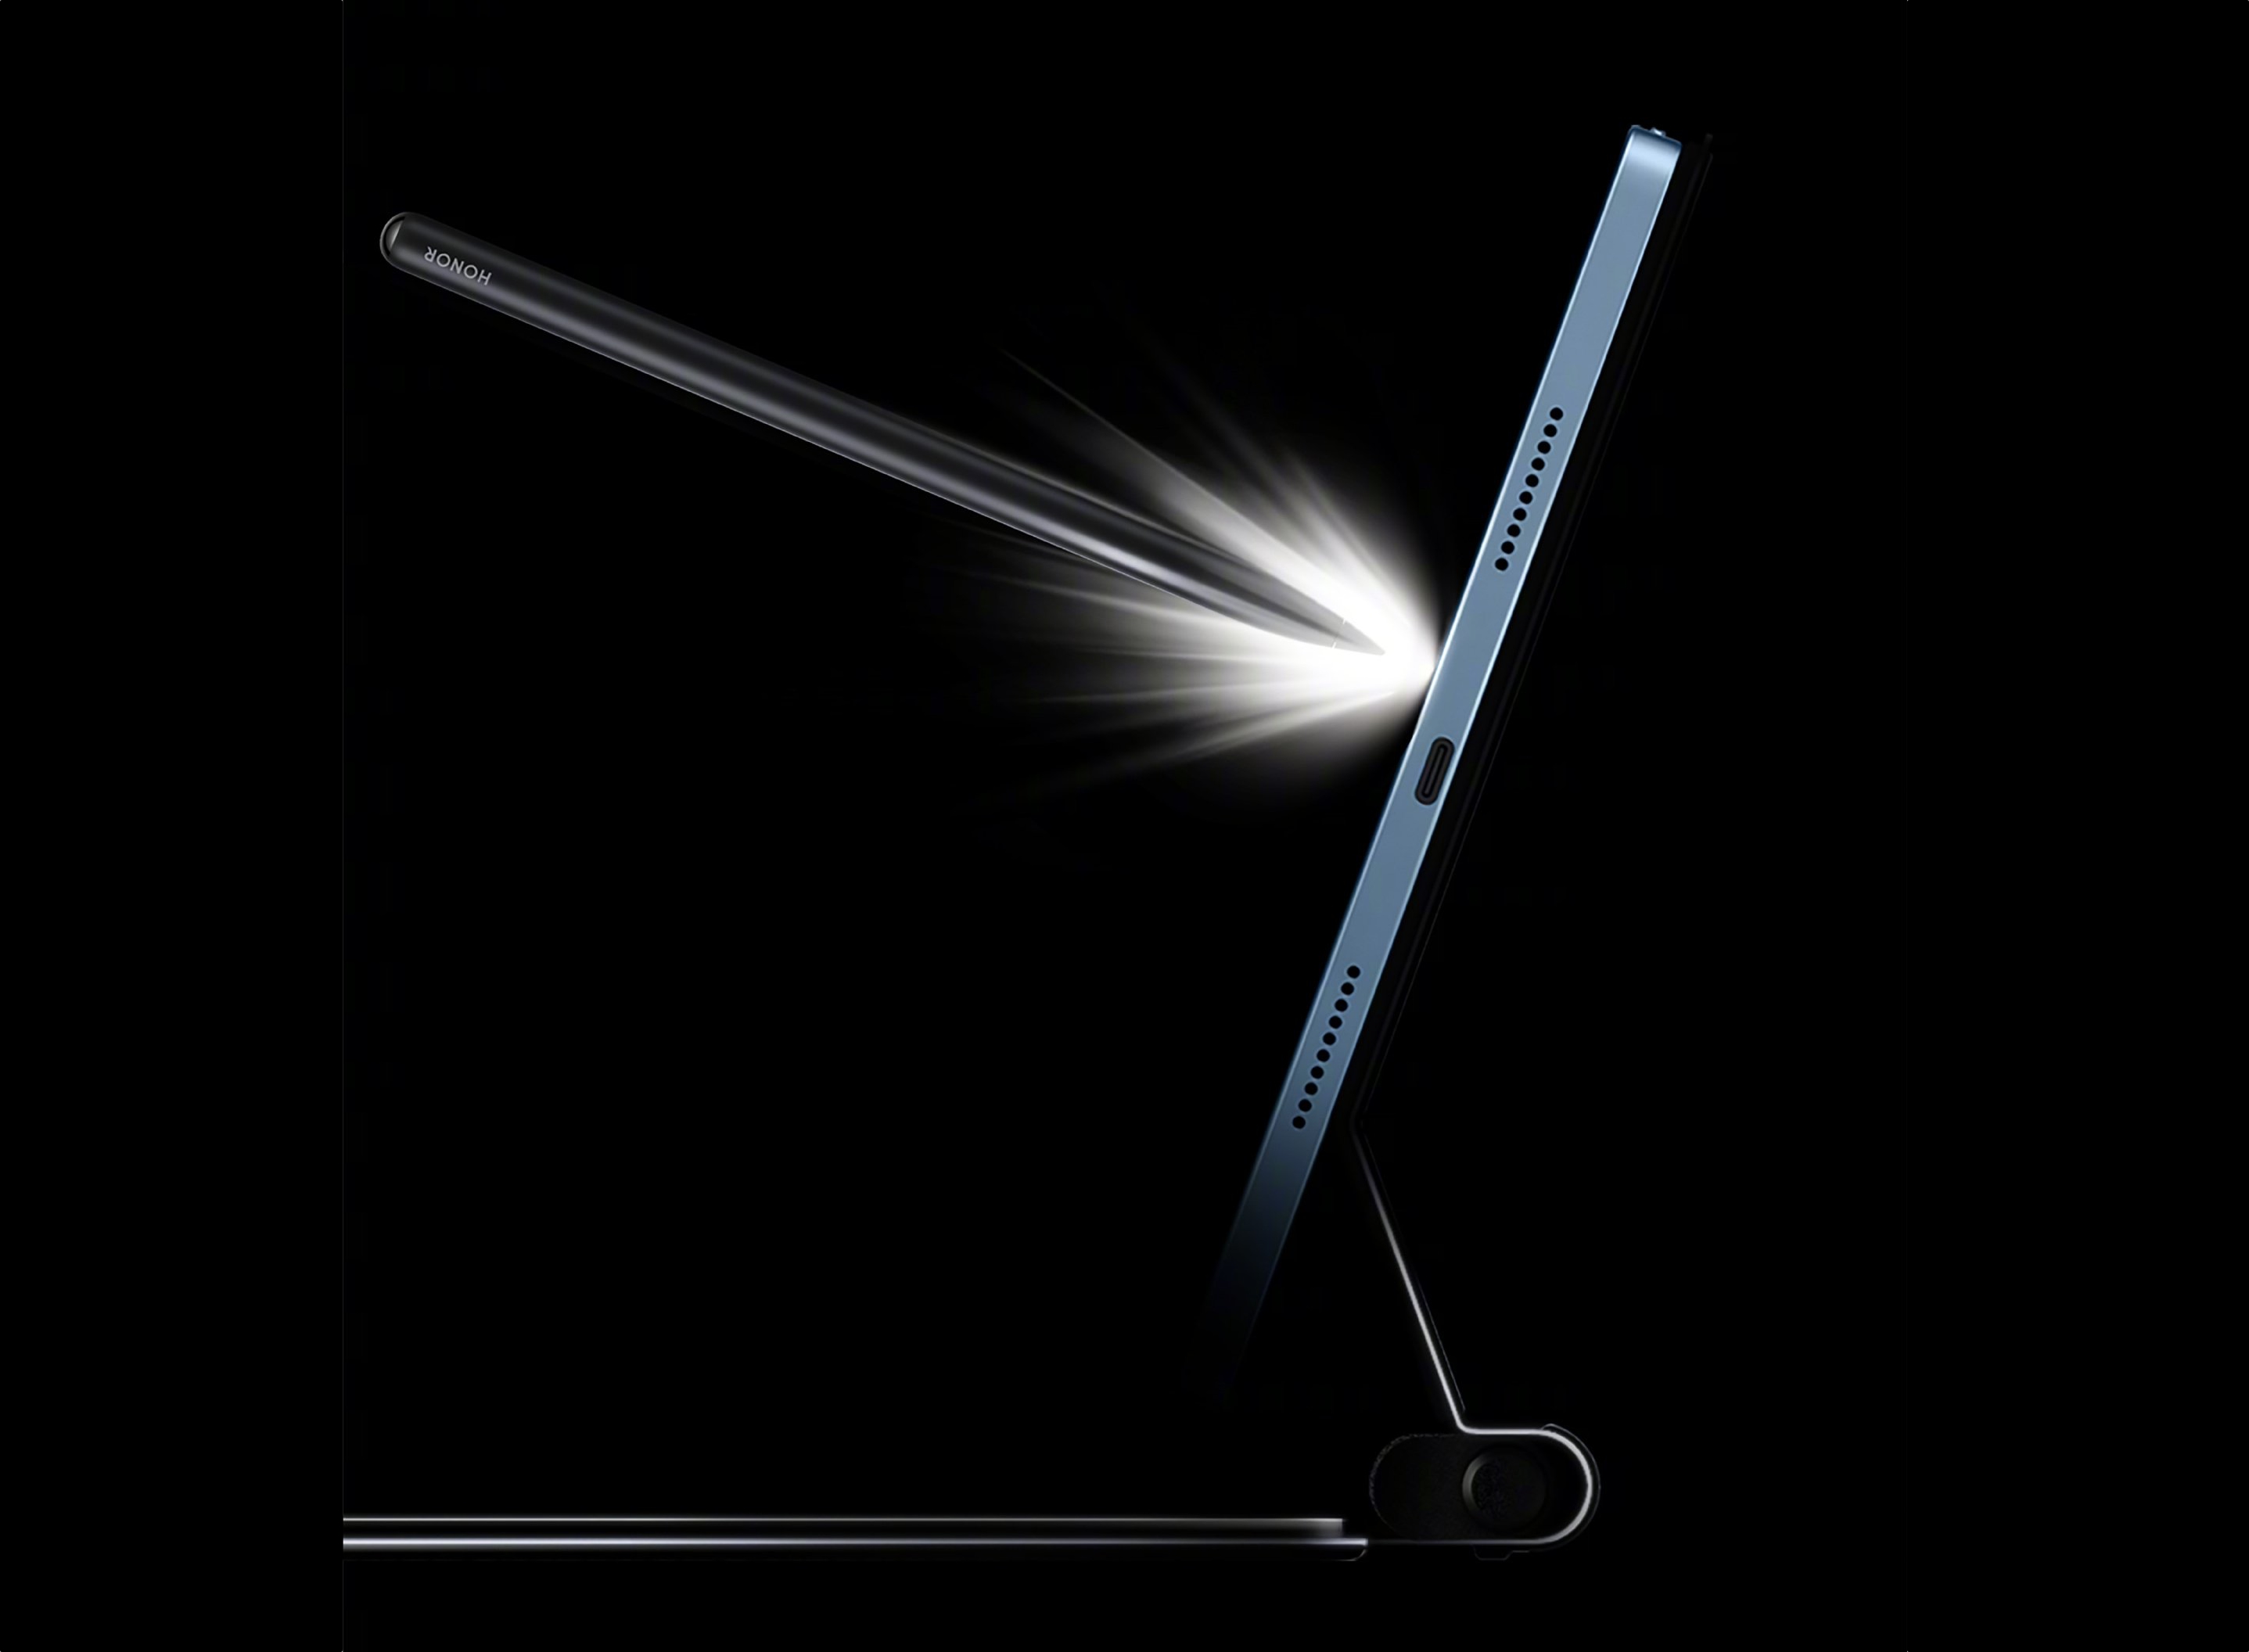 Honor V7 Pro tablet został ujawniony w oficjalnym teaserze: będzie on miał Apple Magic Keyboard-style rysik i etui klawiatury